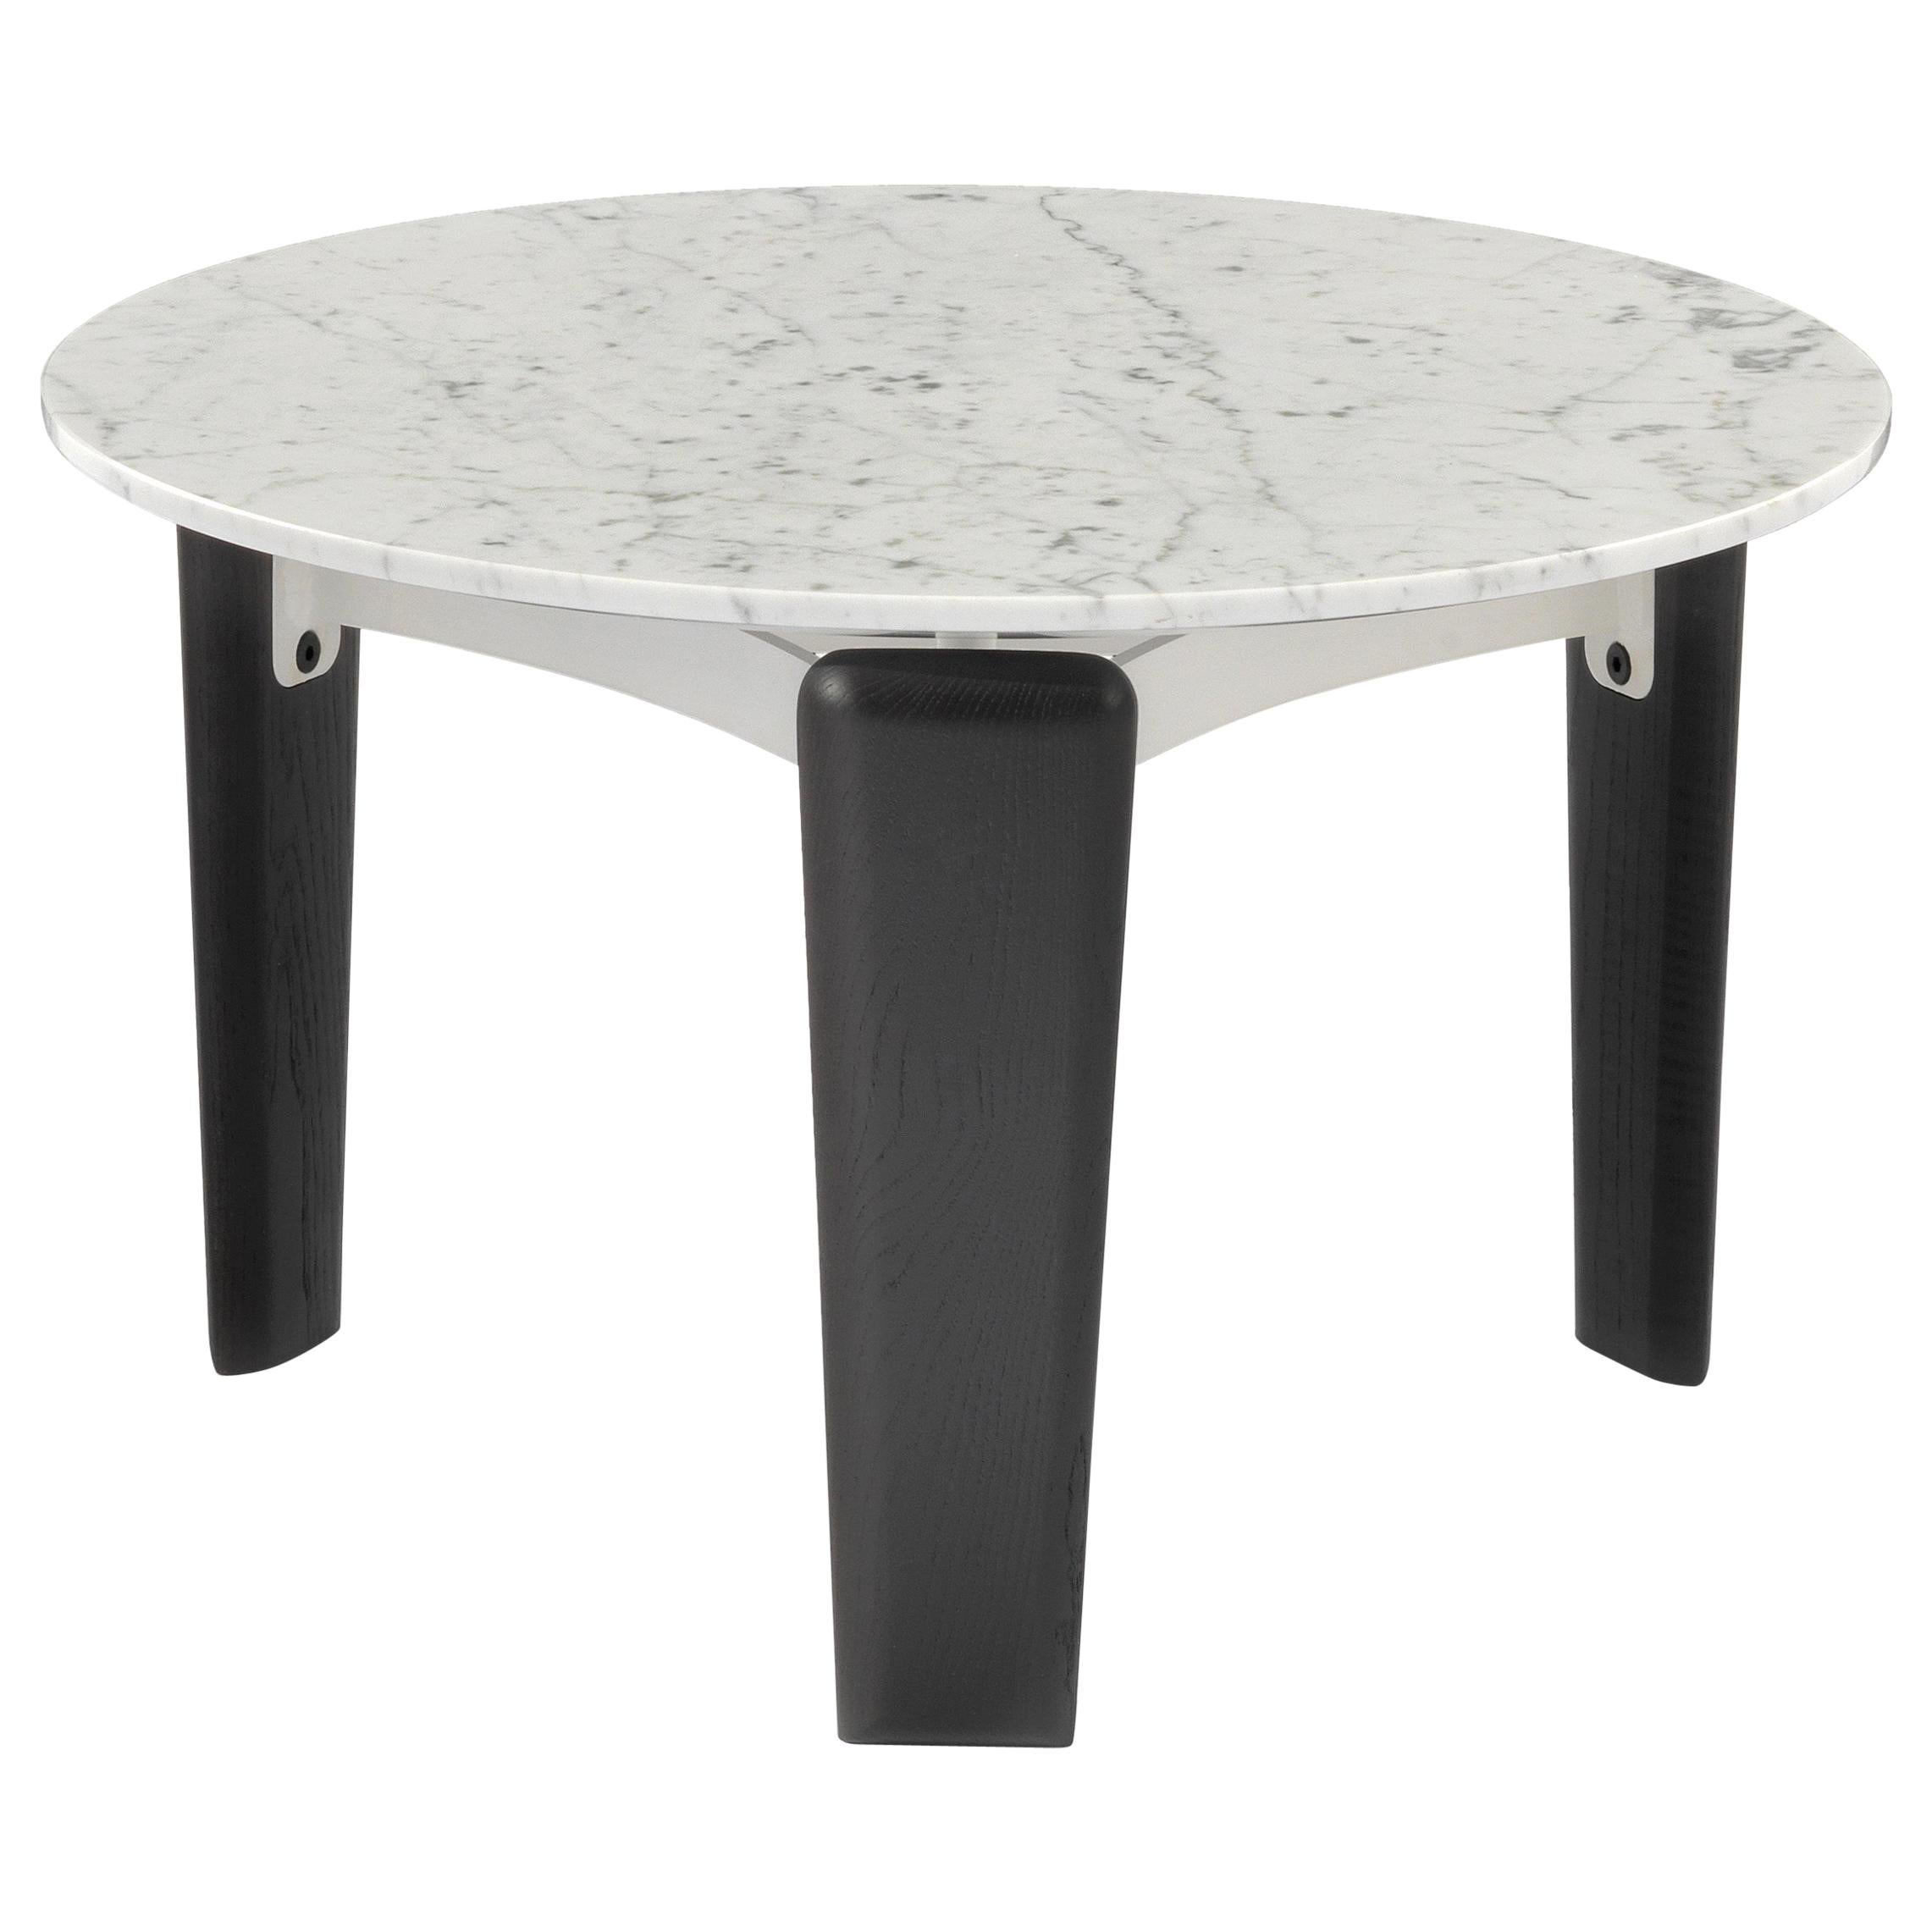 Petite table basse Arflex de 50 cm en marbre blanc par Claesson Koivisto Rune